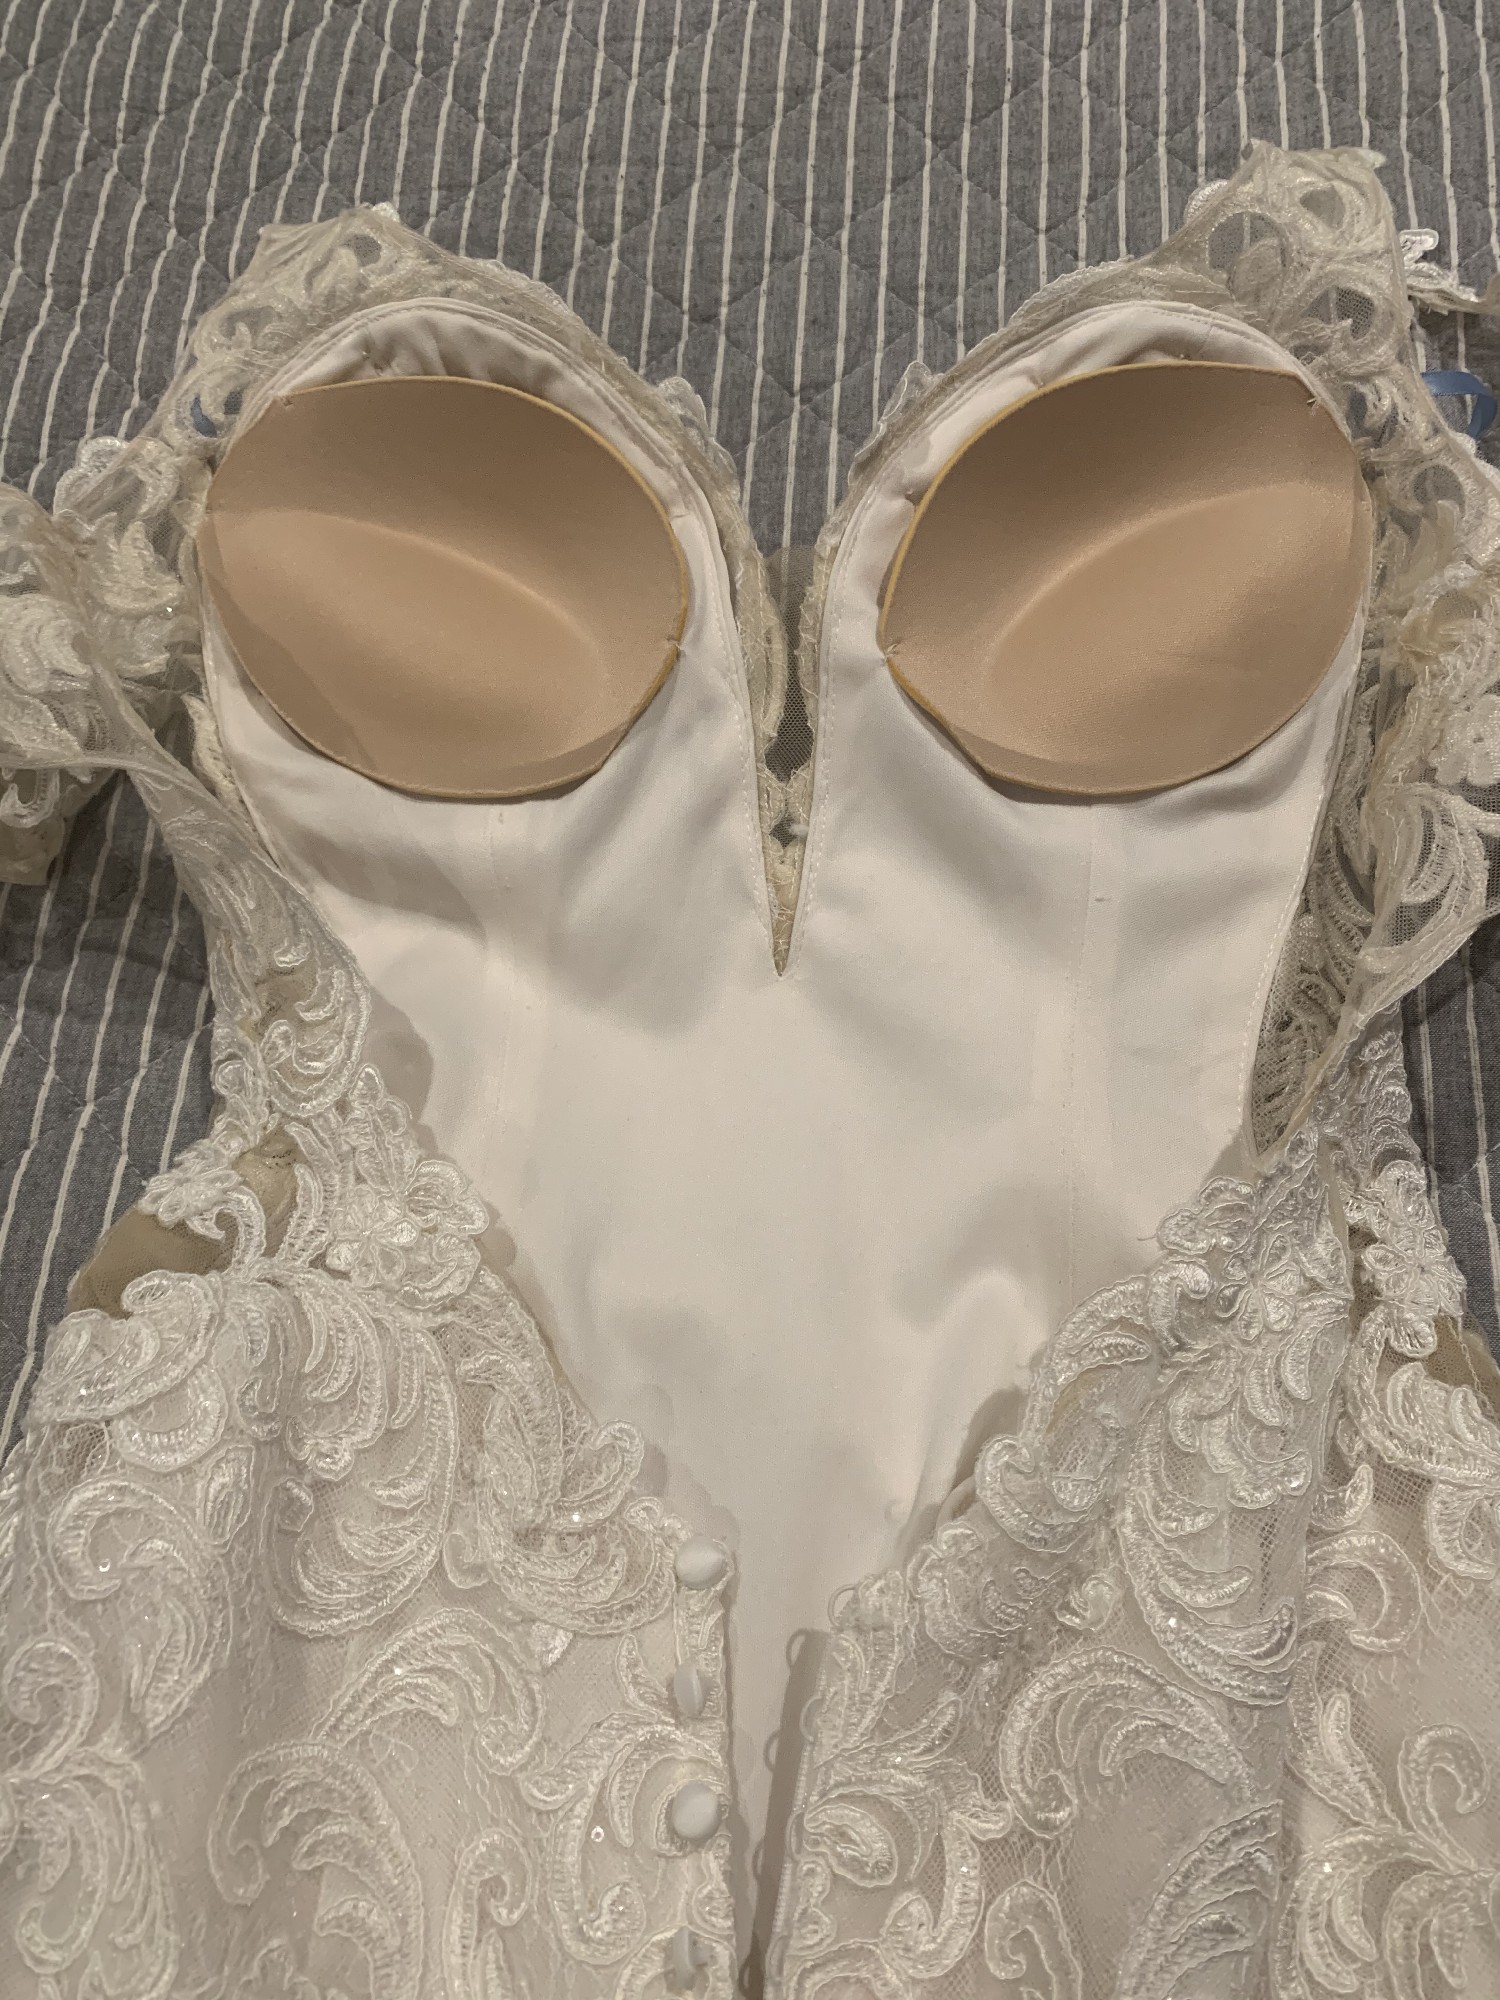 Allure Bridals 9651 New Wedding Dress Save 50% - Stillwhite